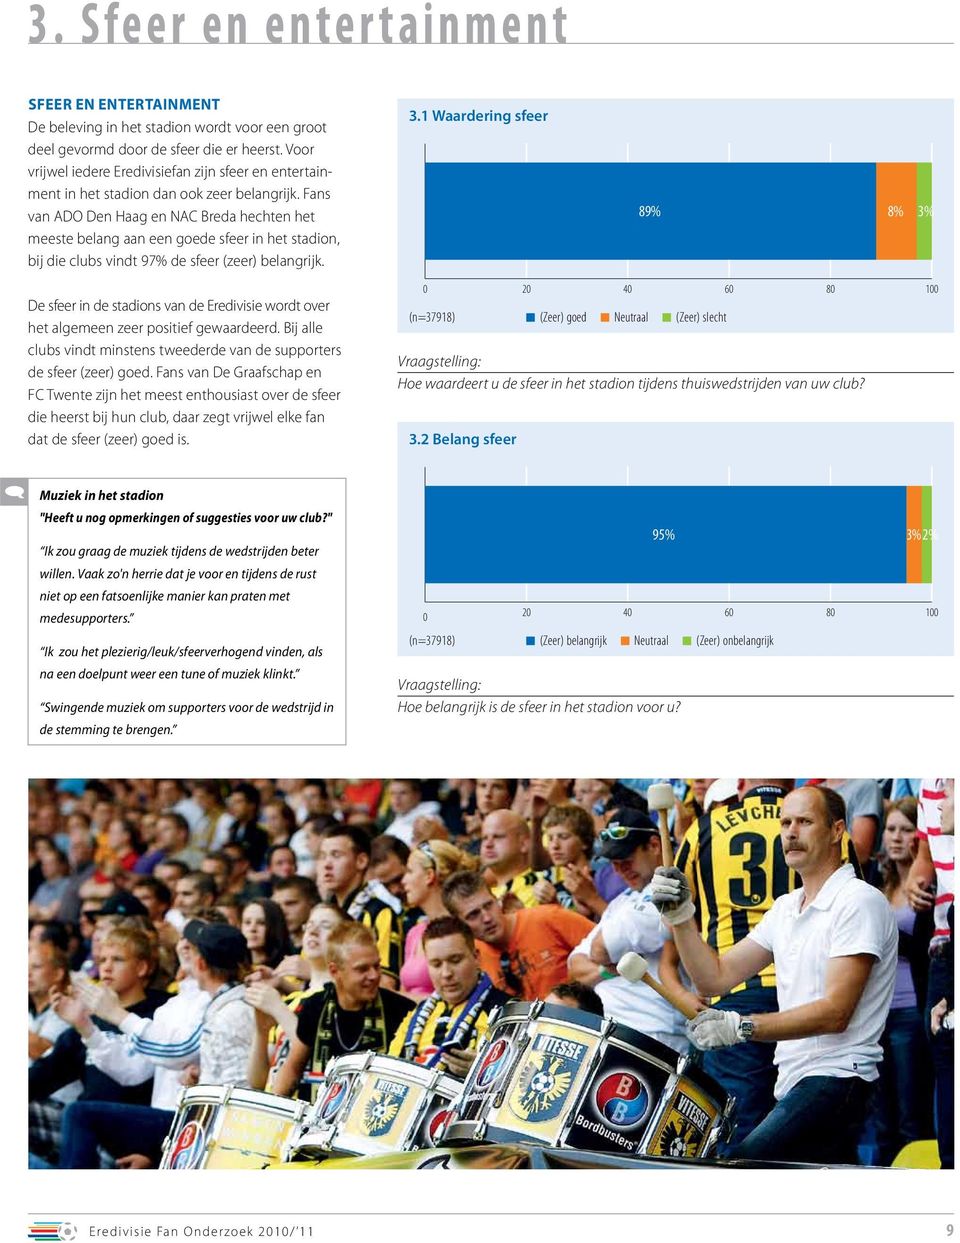 Fans van ADO Den Haag en NAC Breda hechten het meeste belang aan een goede sfeer in het stadion, bij die clubs vindt 97% de sfeer (zeer) belangrijk. 3.